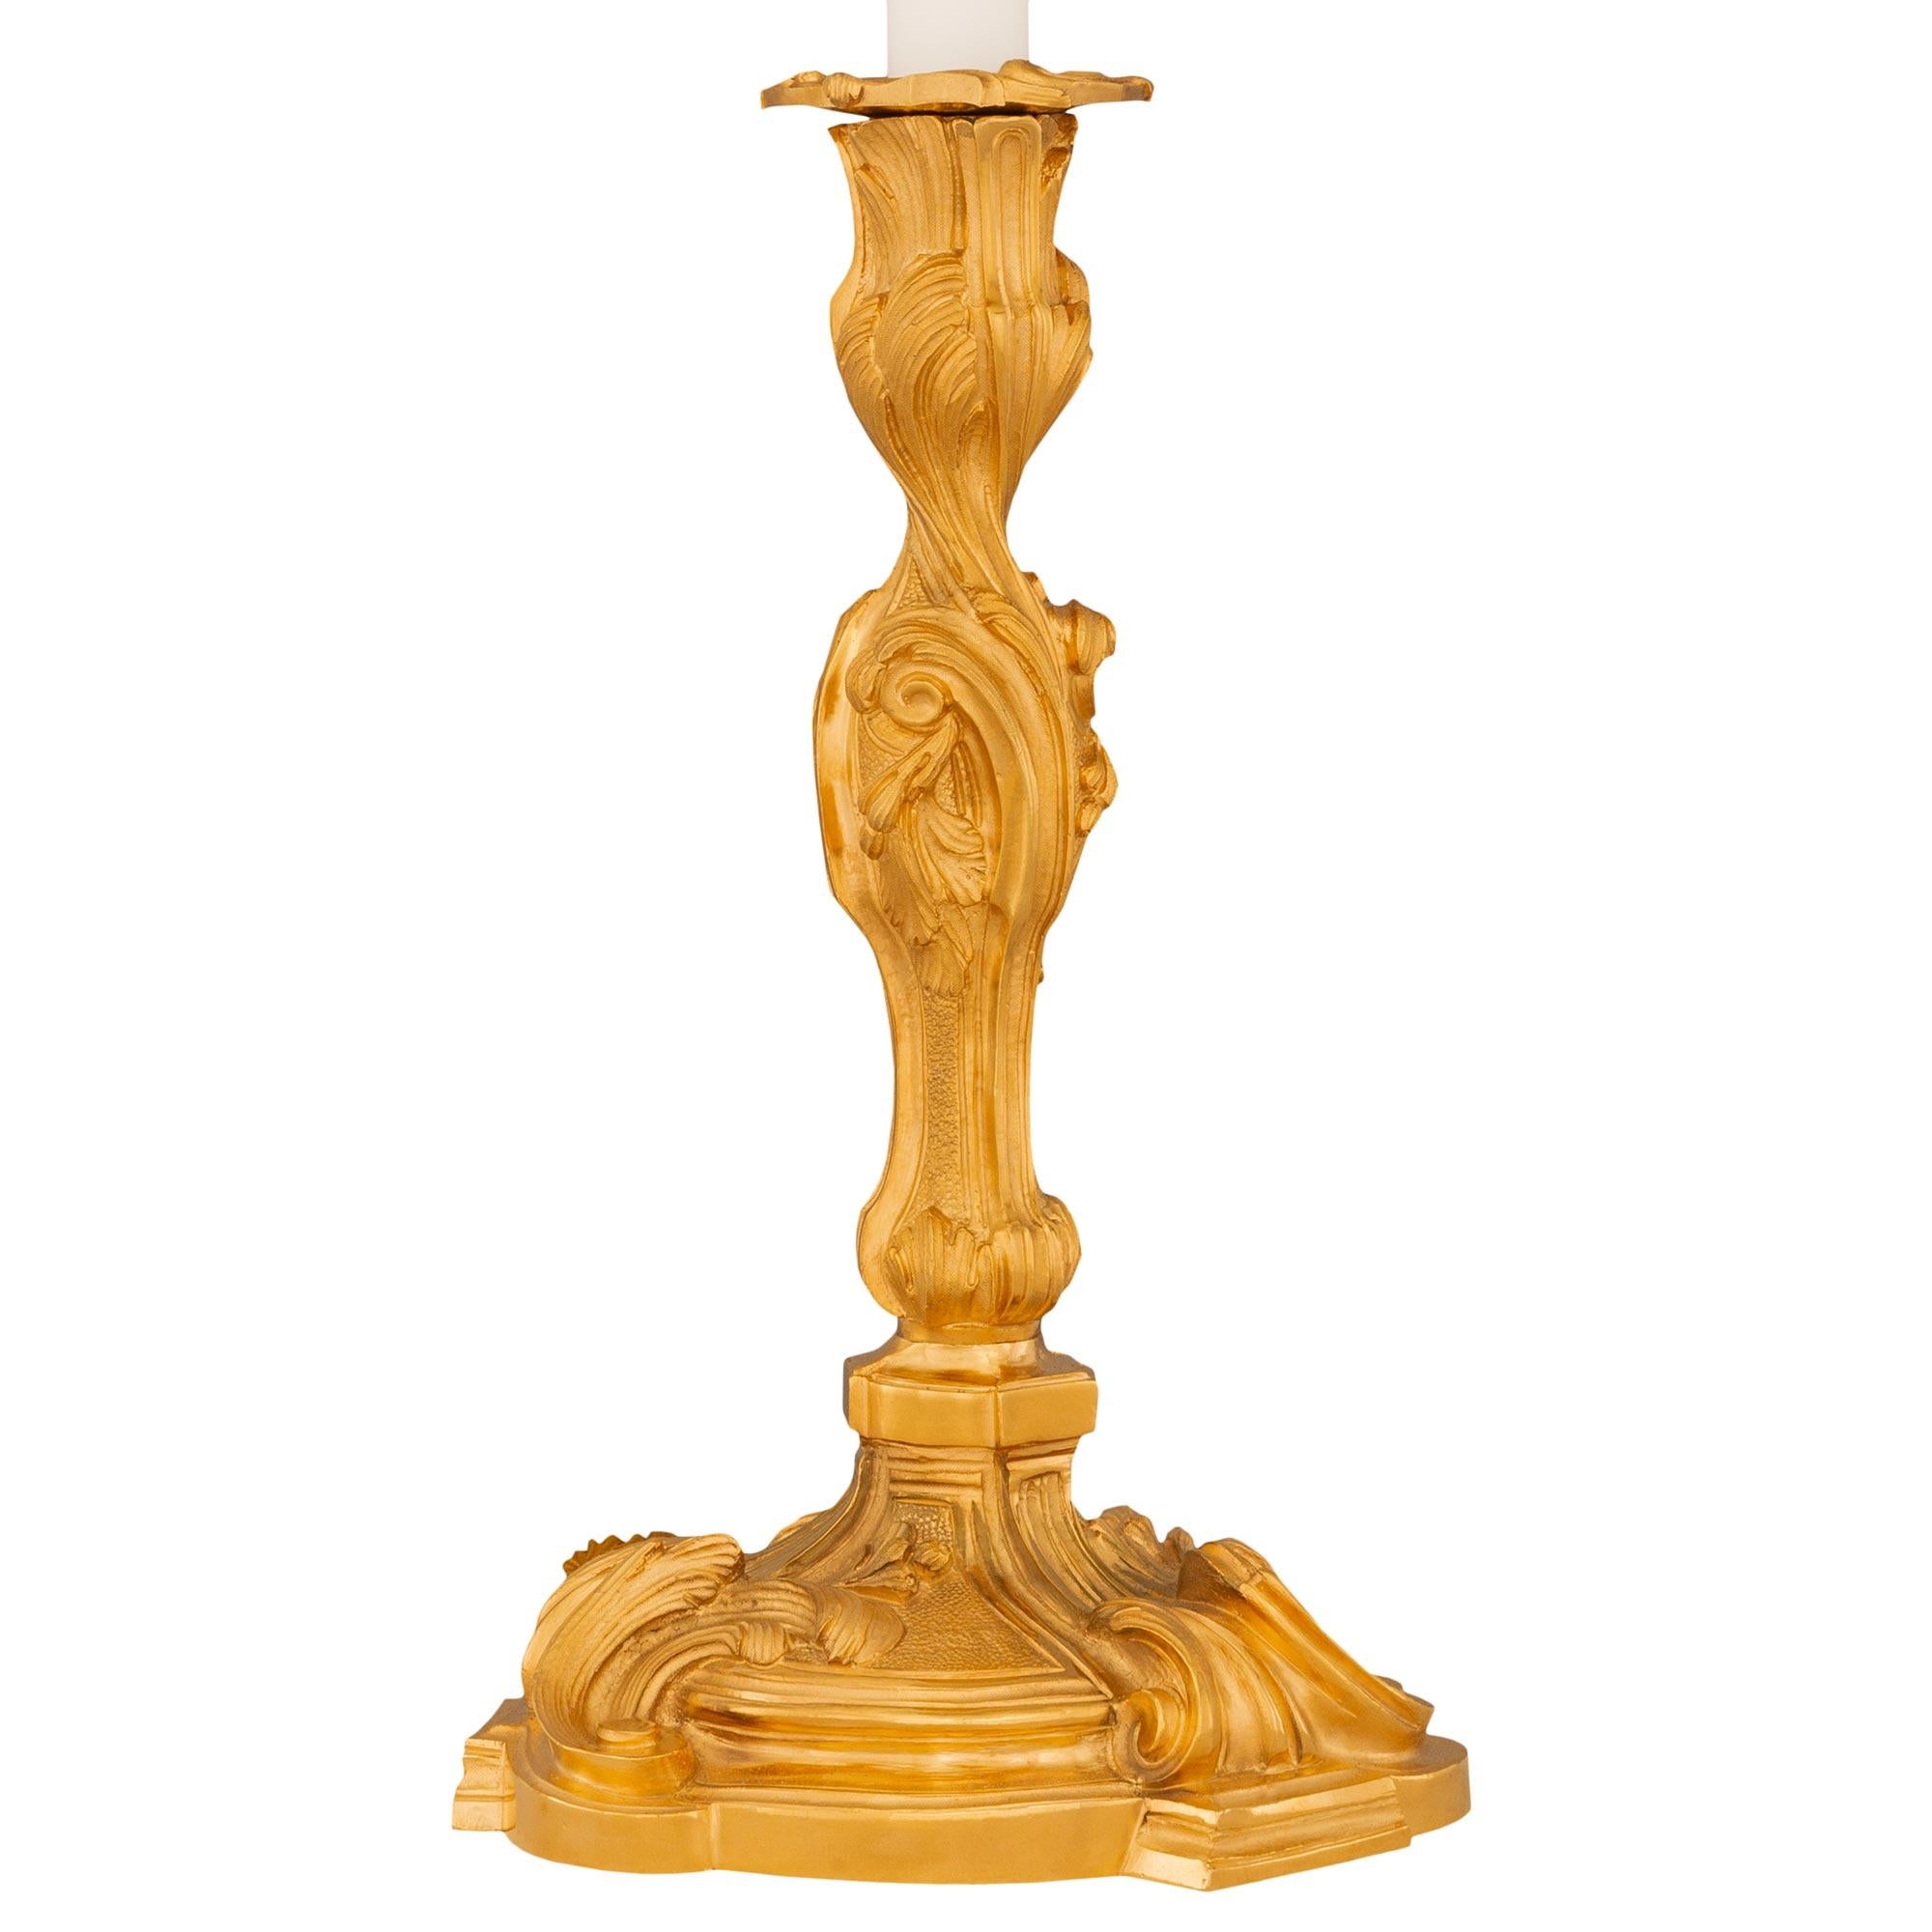 Une élégante paire de lampes-bougies en bronze doré de style Louis XV du XIXe siècle. Chaque bougeoir monté en lampe est surélevé par une base circulaire avec trois fins éléments en saillie sous de jolis motifs feuillagés en volutes dans une riche